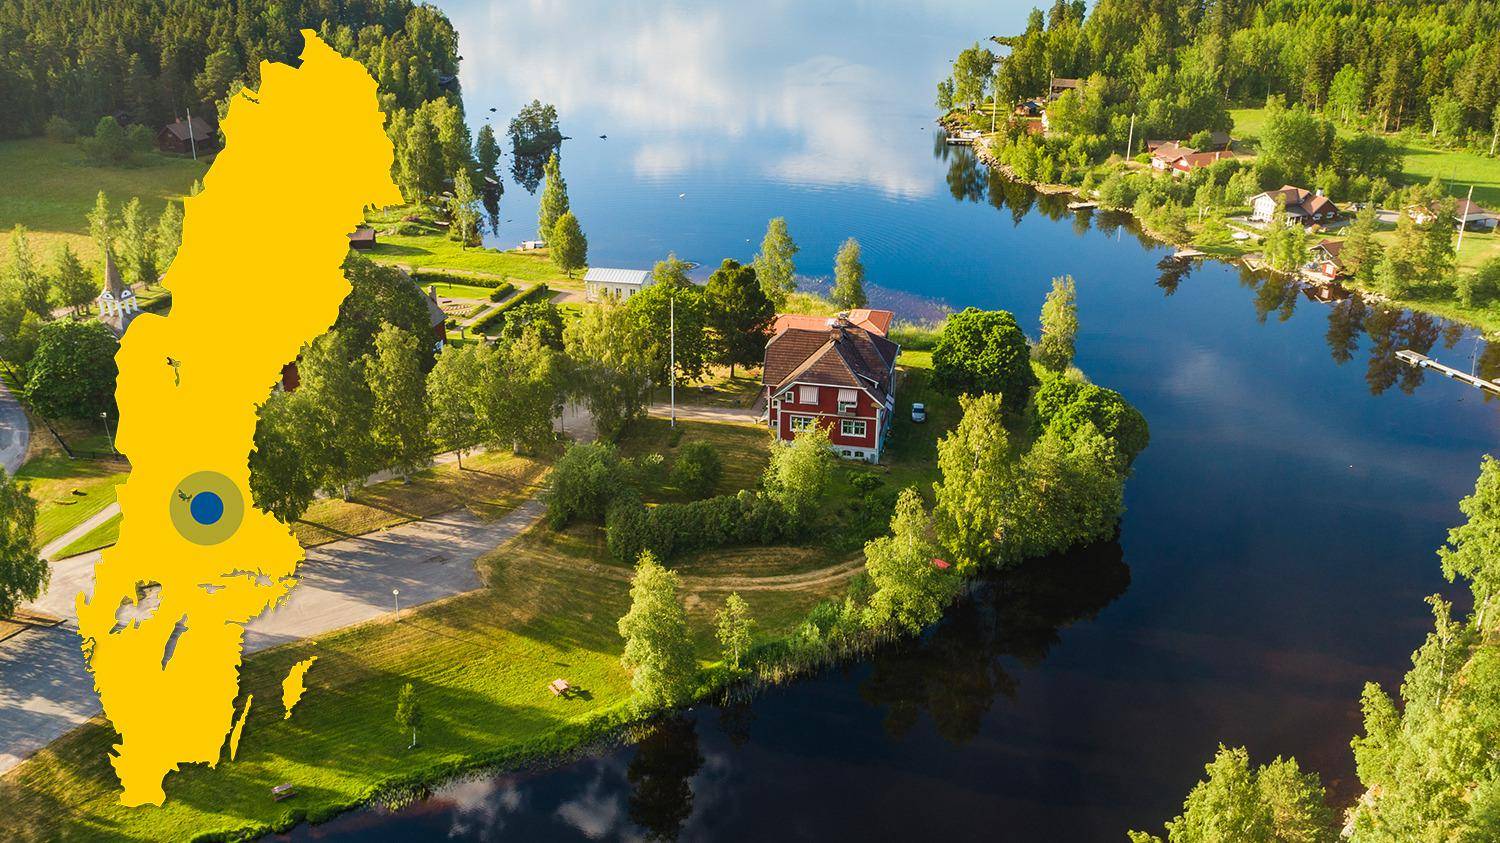 Ein Fluss mündet in einen See. Am See stehen ein paar Häuser im Grünen. Es gibt eine gelbe Karte von Schweden mit einem blauen Punkt, der Toftan markiert.